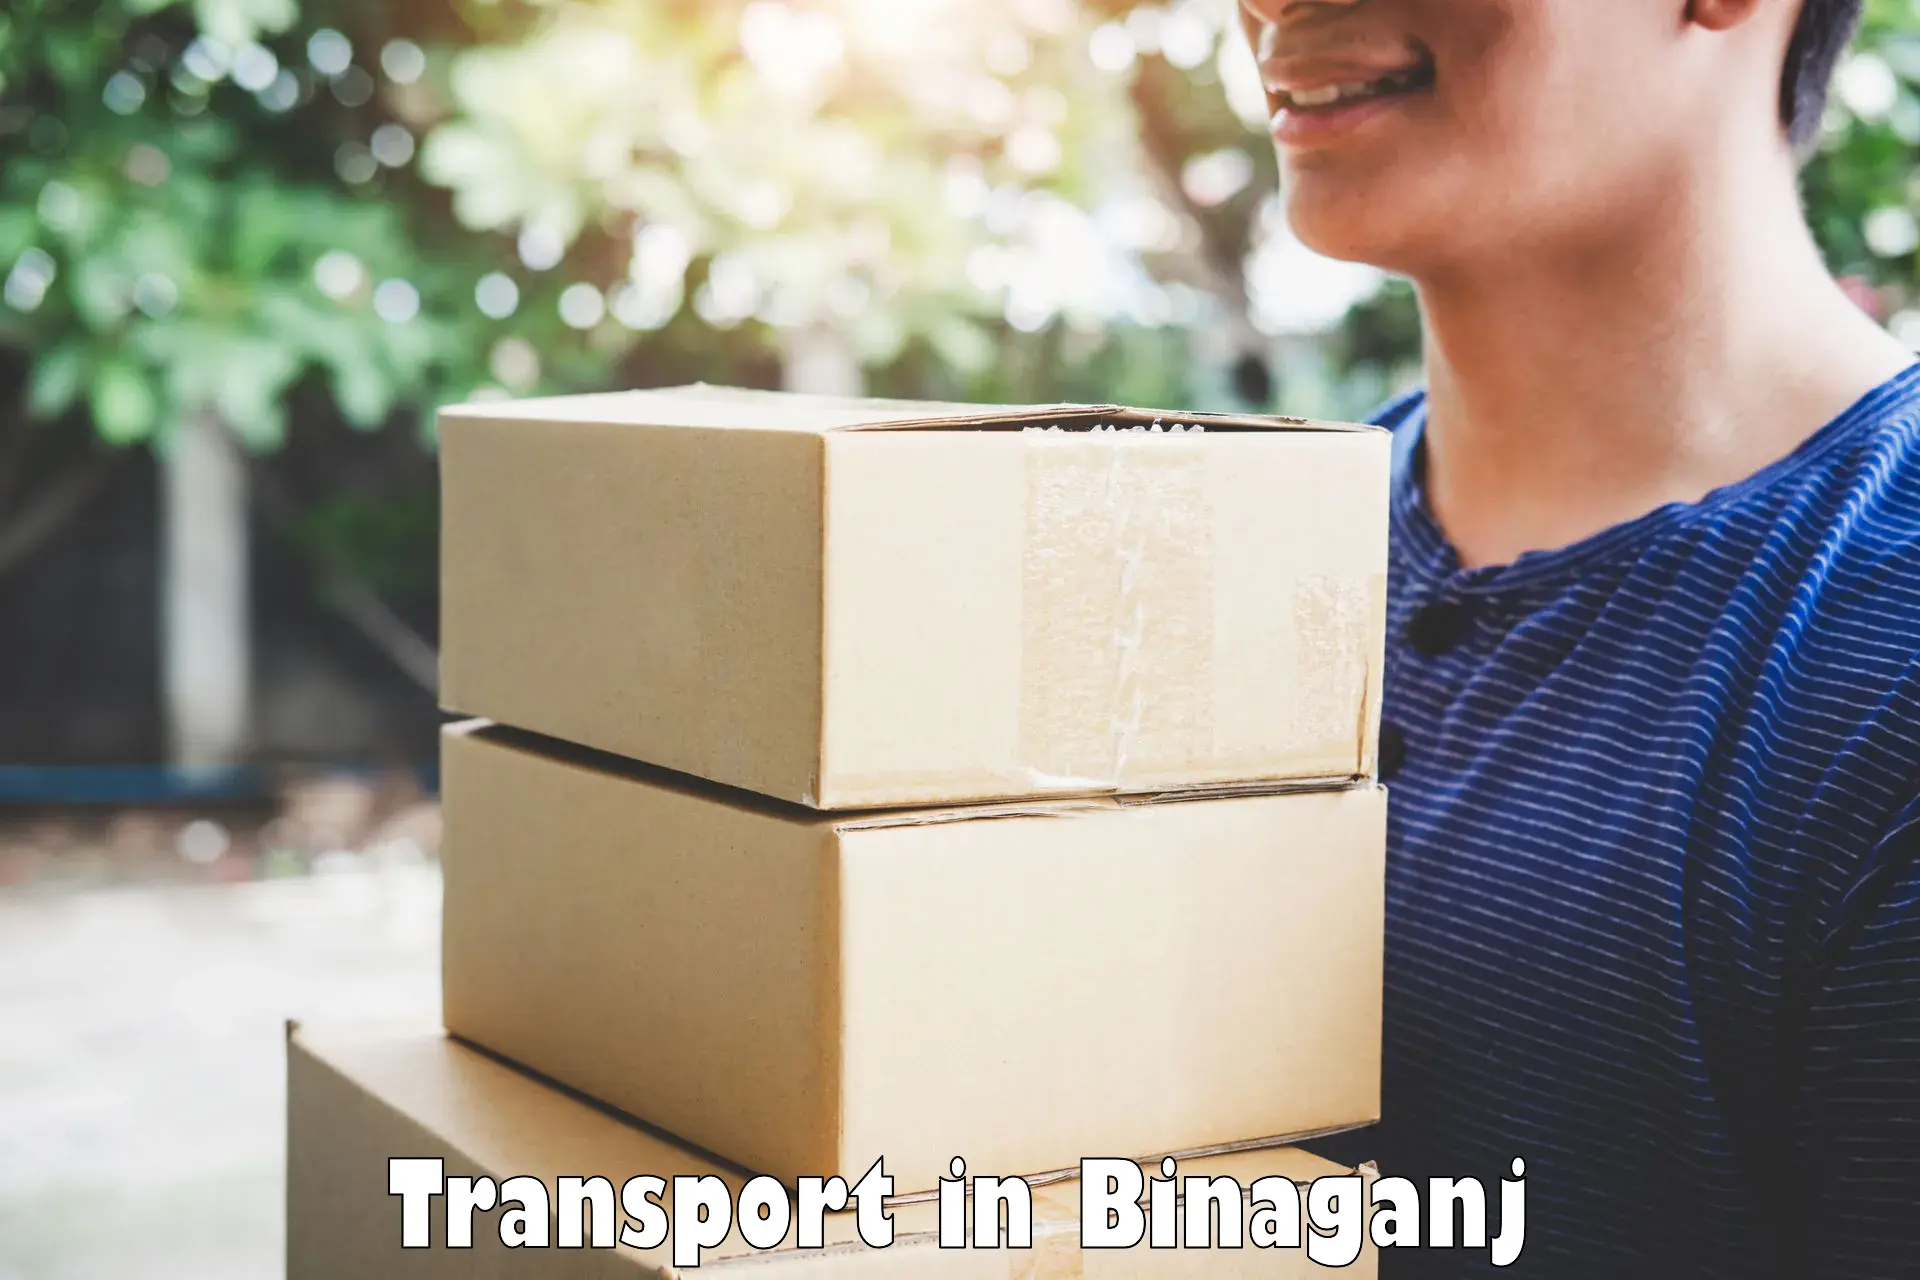 Road transport online services in Binaganj